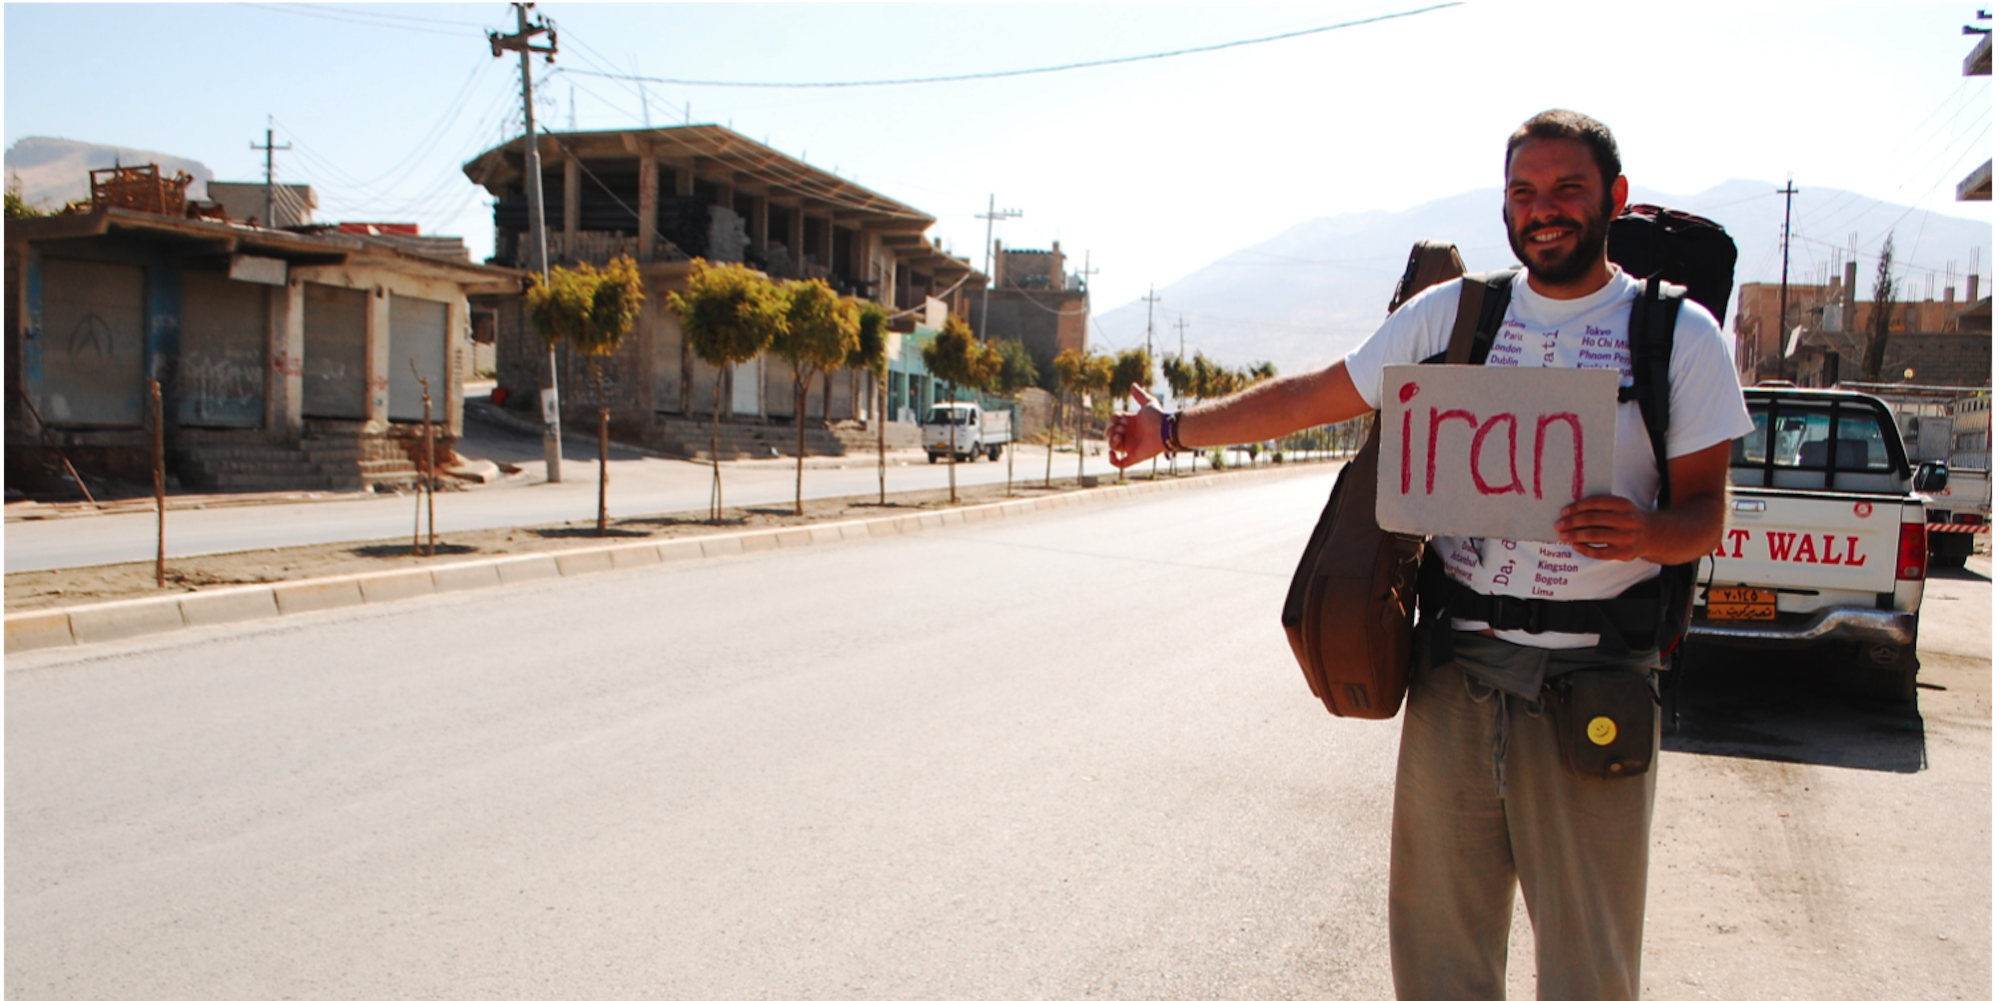 Perko_hitchhiking in Iraq